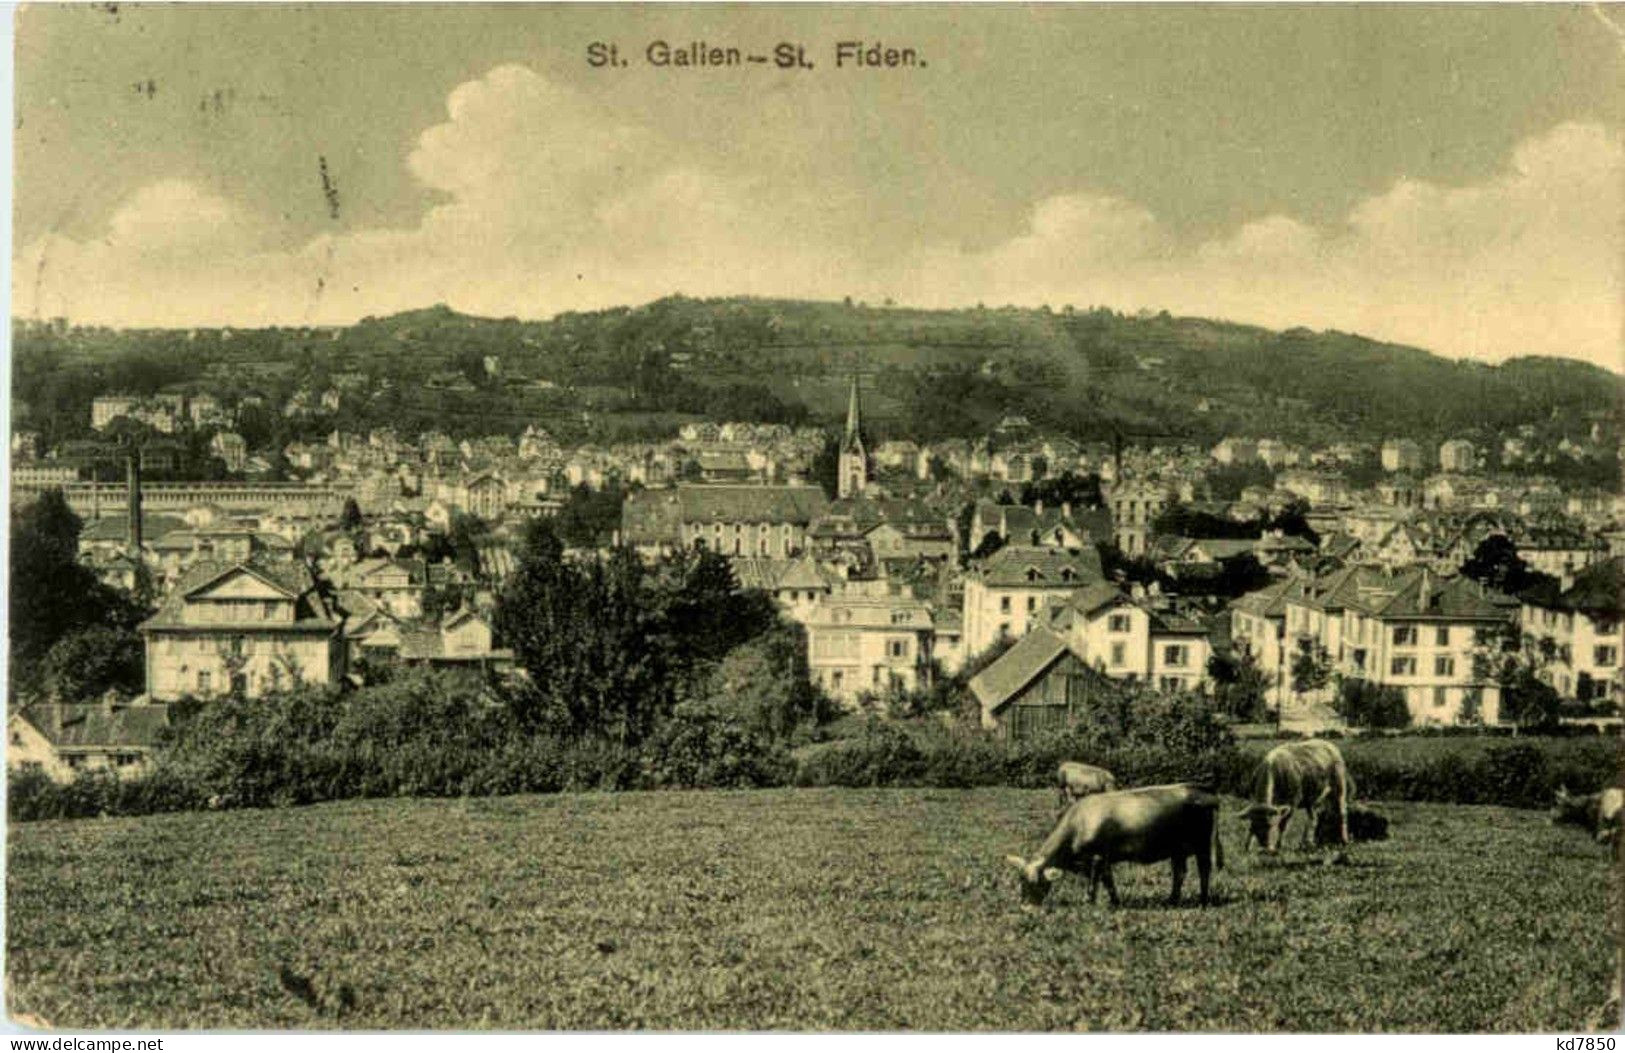 St. Gallen - St. Fiden - St. Gallen